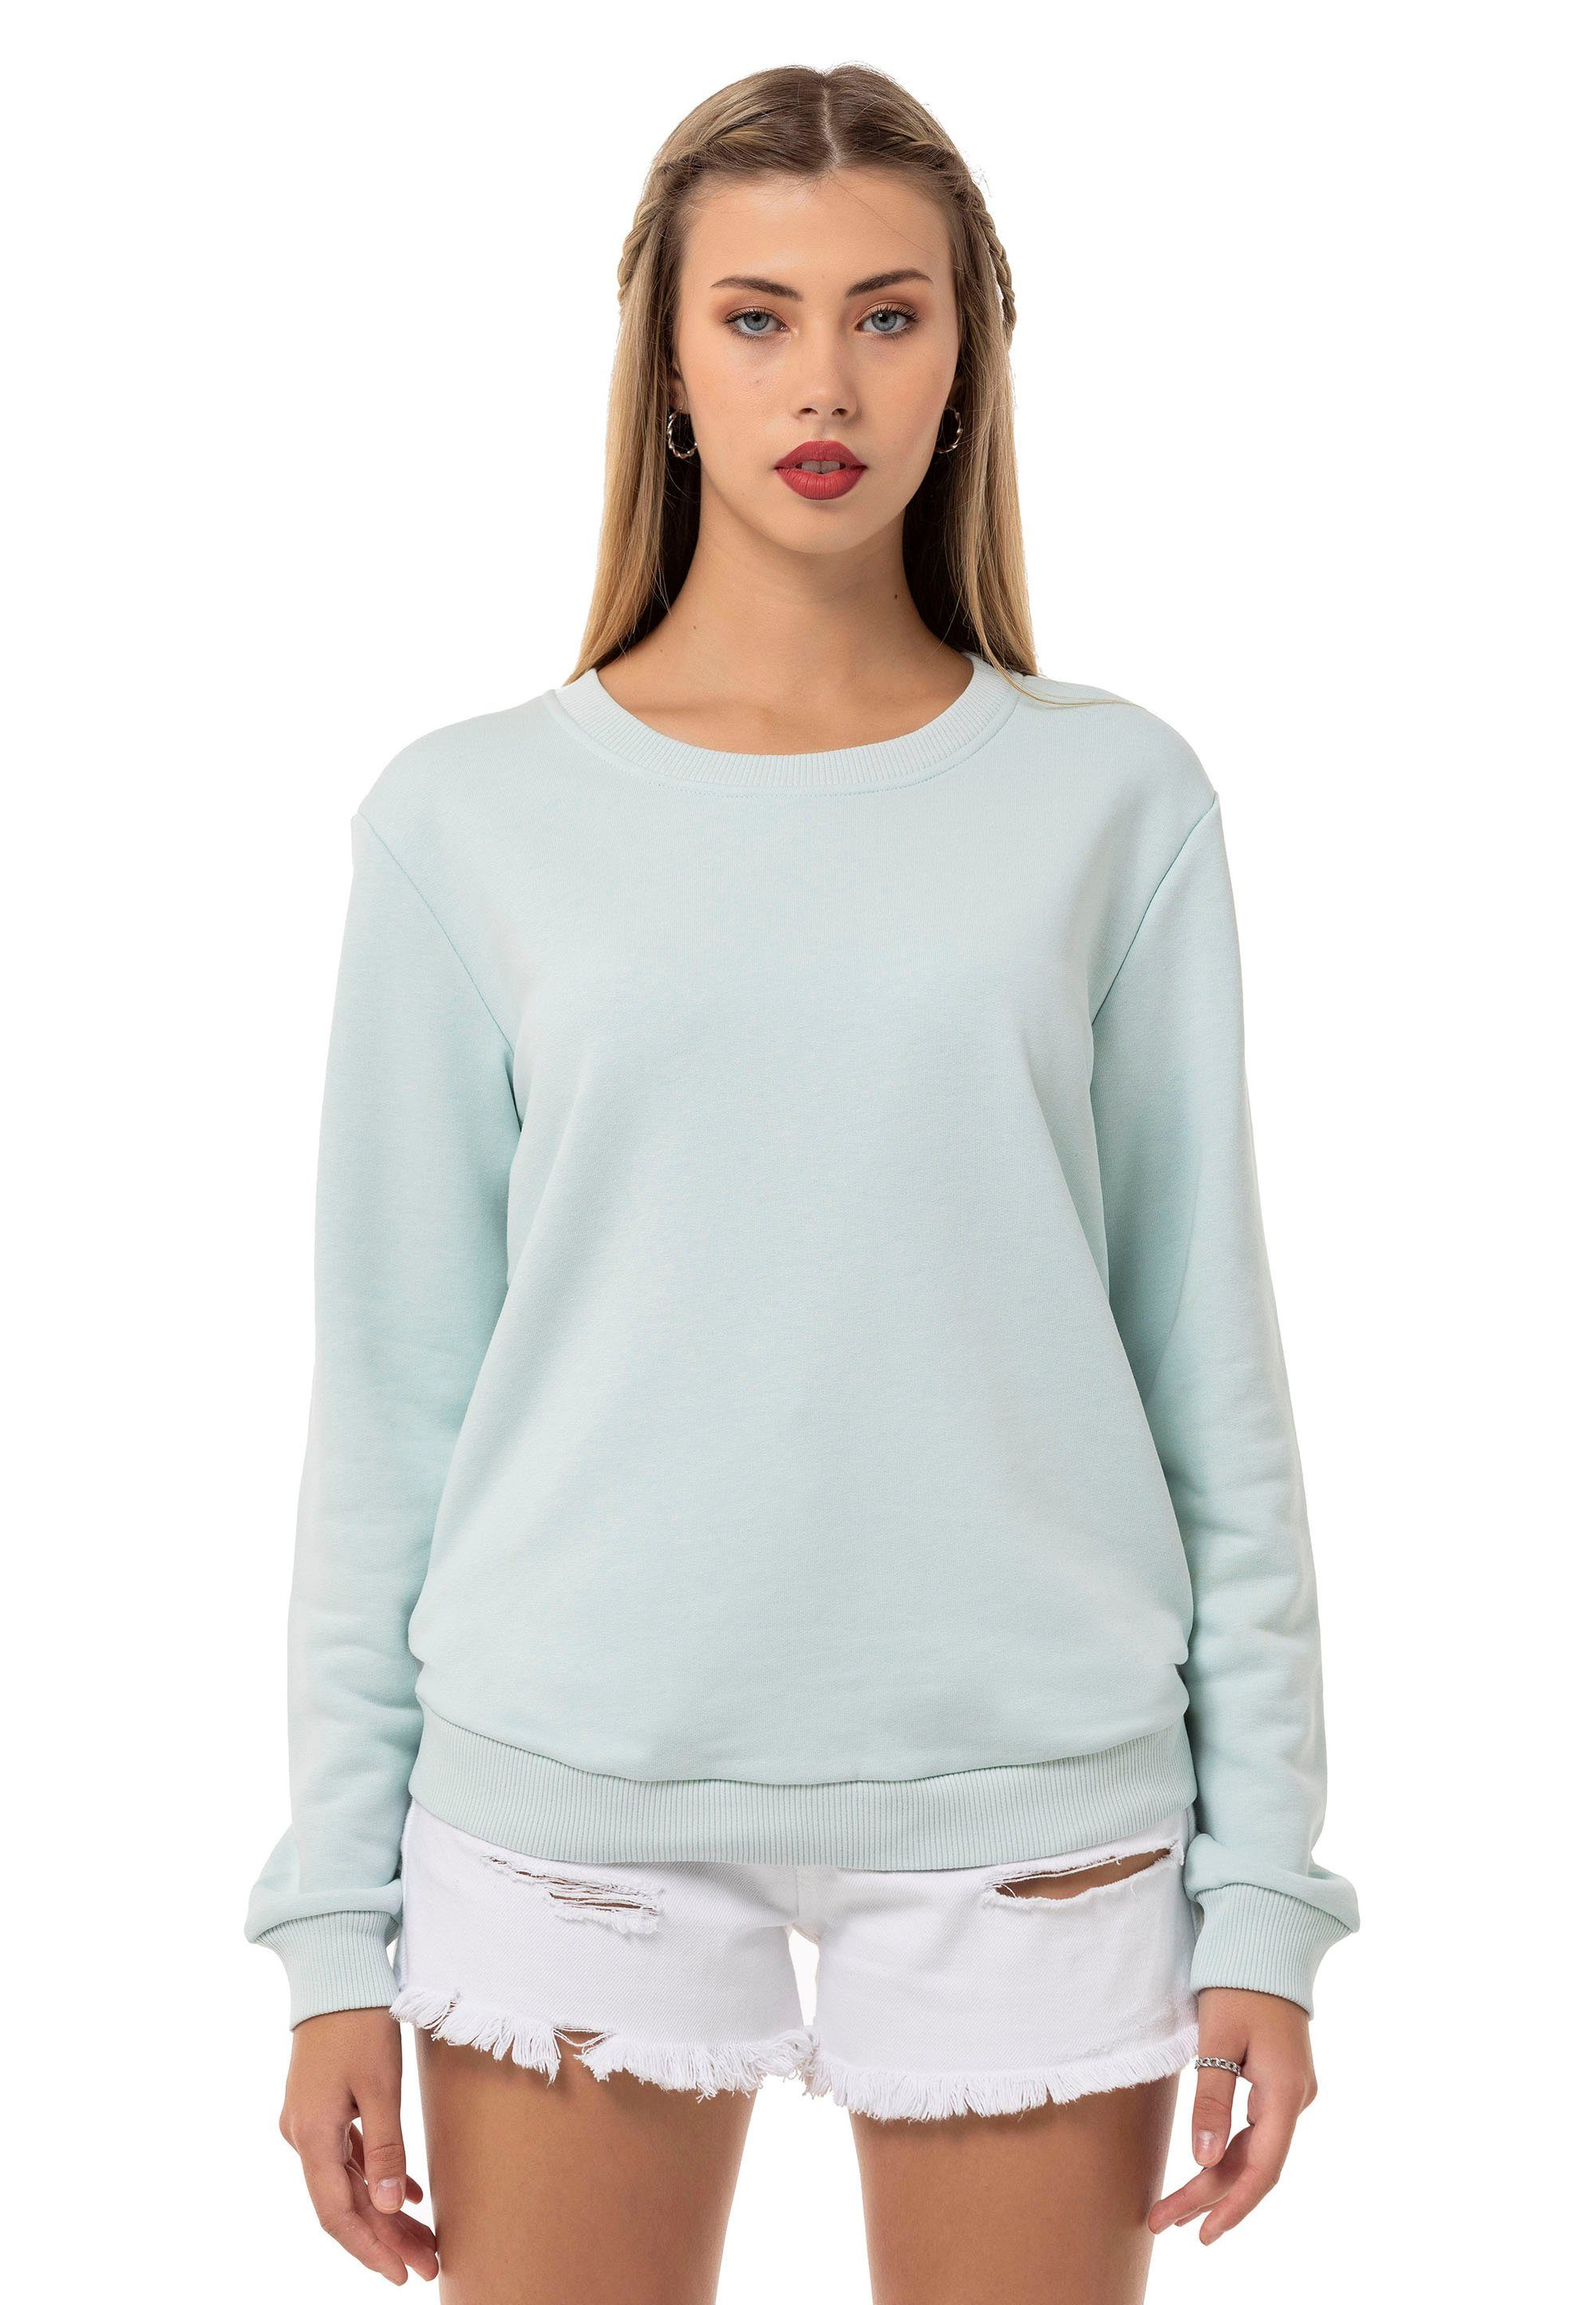 RedBridge Sweatshirt Rundhals Pullover Premium Qualität Mint